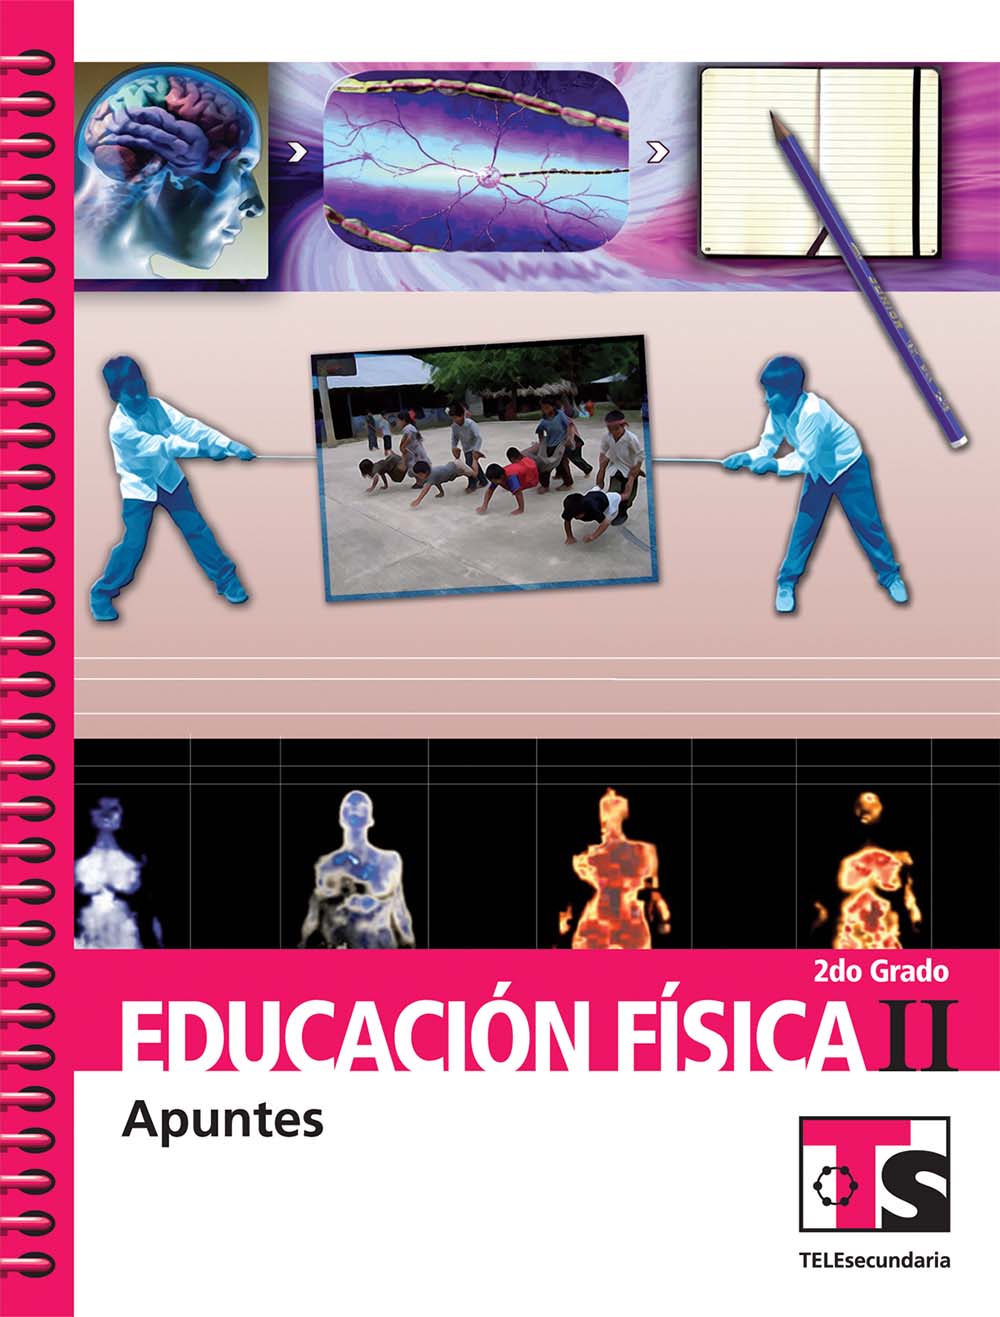 Educación Fisica II. Apuntes., Editorial: Secretaría de Educación Pública, Nivel: Telesecundaria, Grado: 2